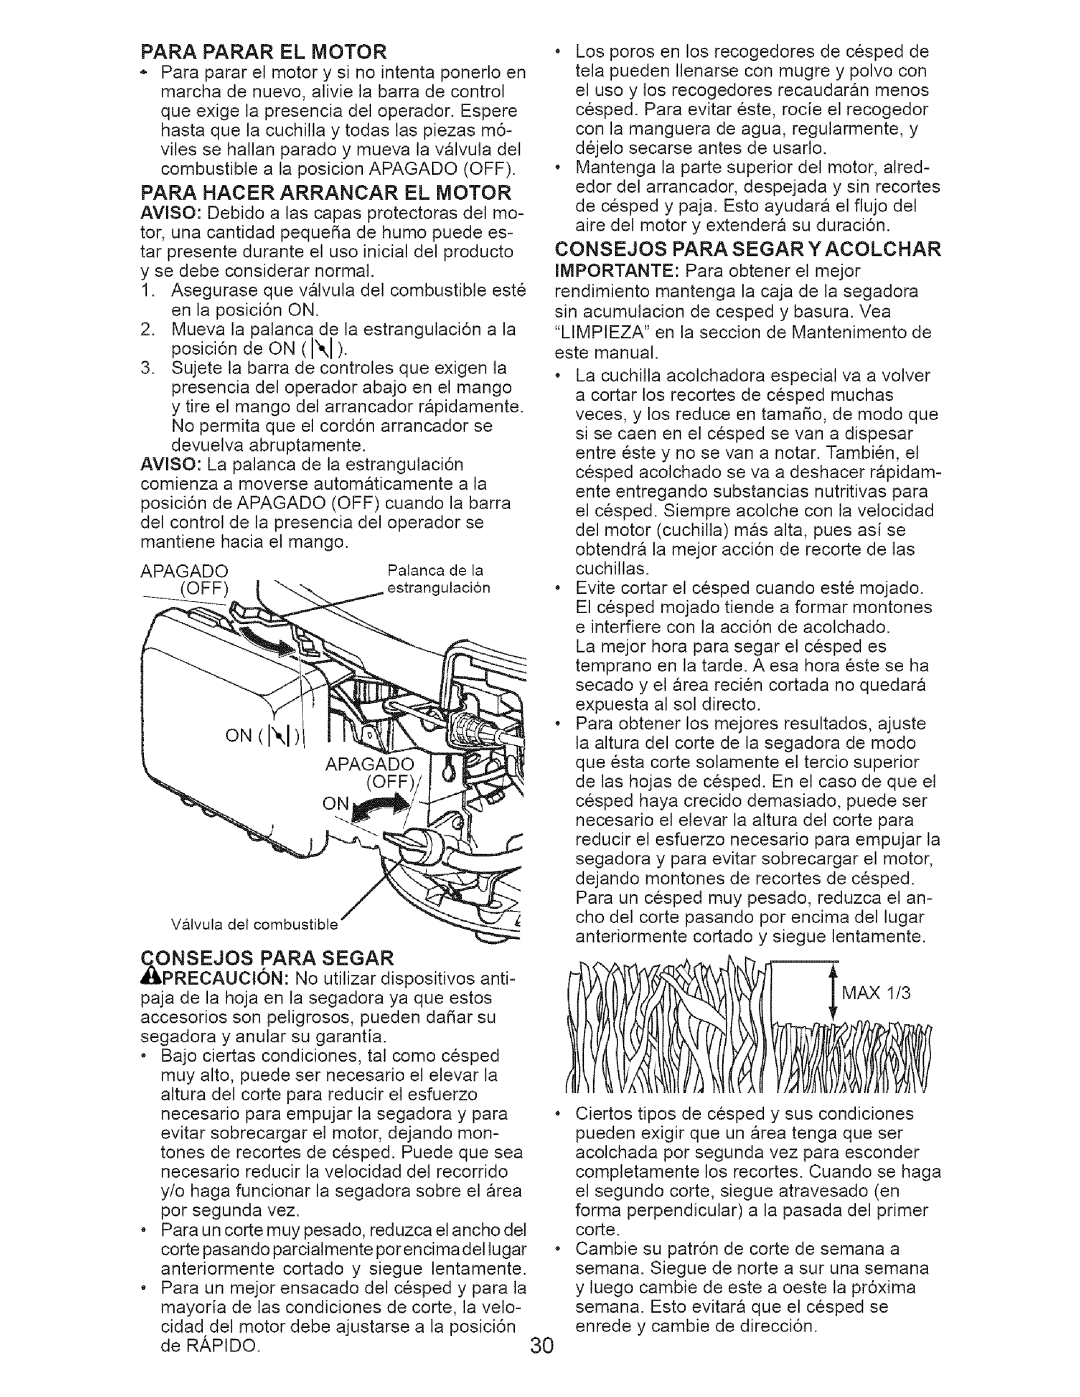 Craftsman 917-371813 manual Para Parar El Motor, Para Hacer Arrancar El Motor 